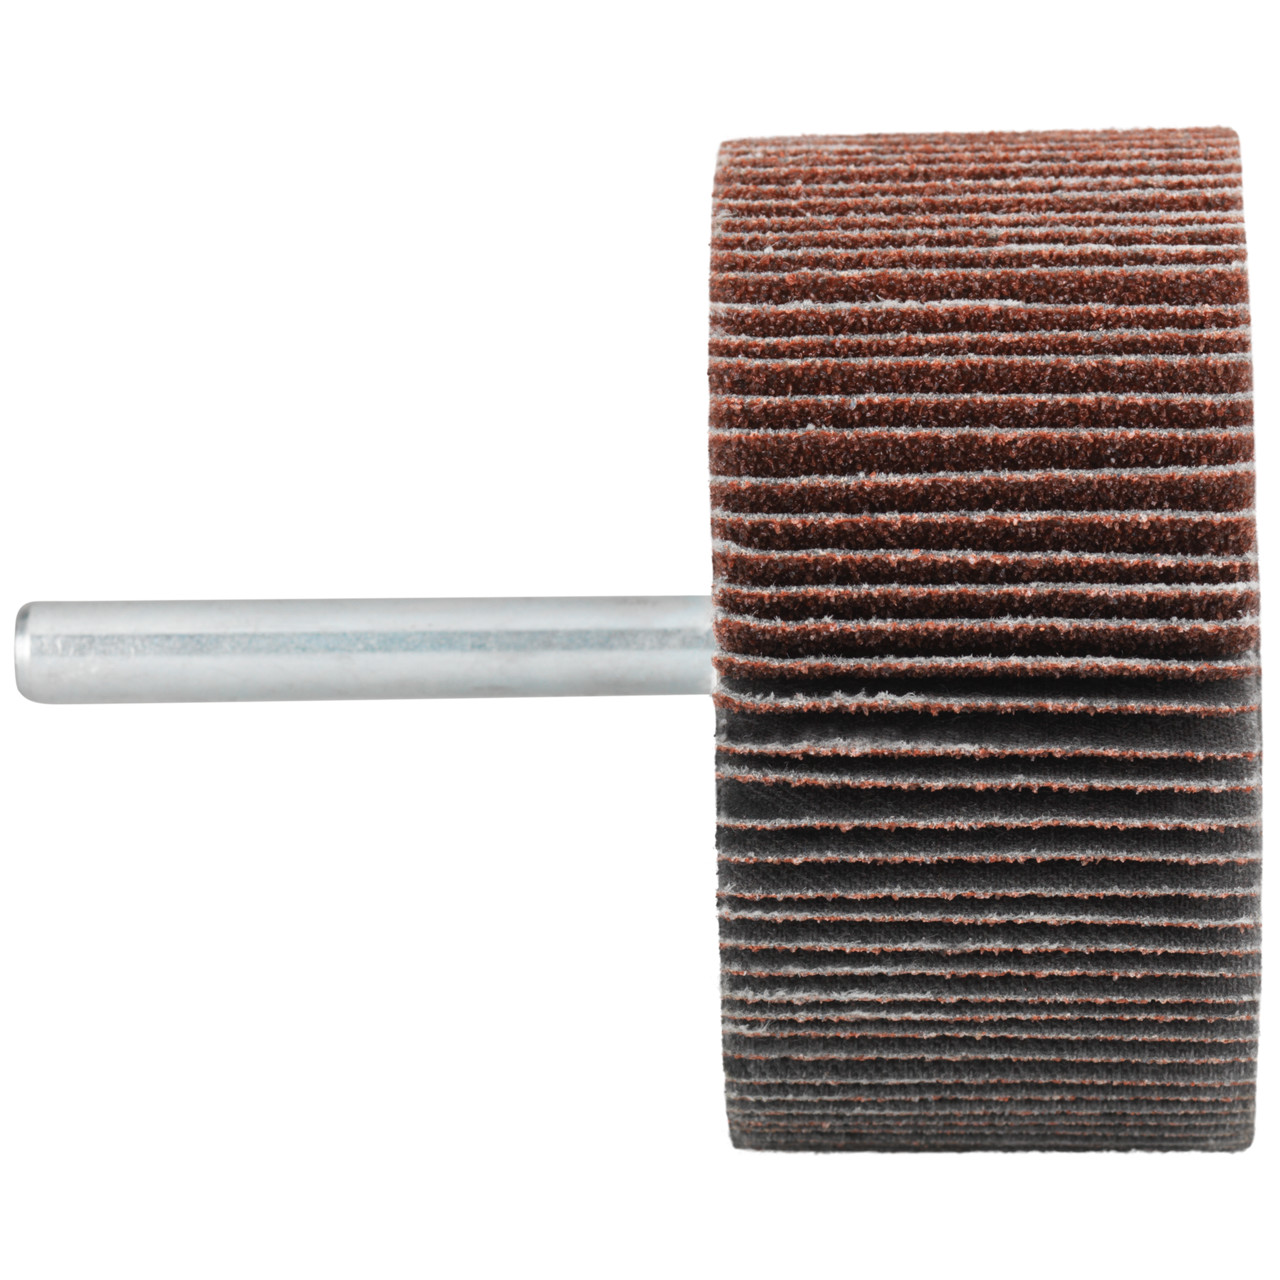 Tyrolit A-P01 C X Pennen DxD 40x20 Voor staal, roestvast staal en non-ferrometalen, P150, vorm: 52LA, Art. 816919